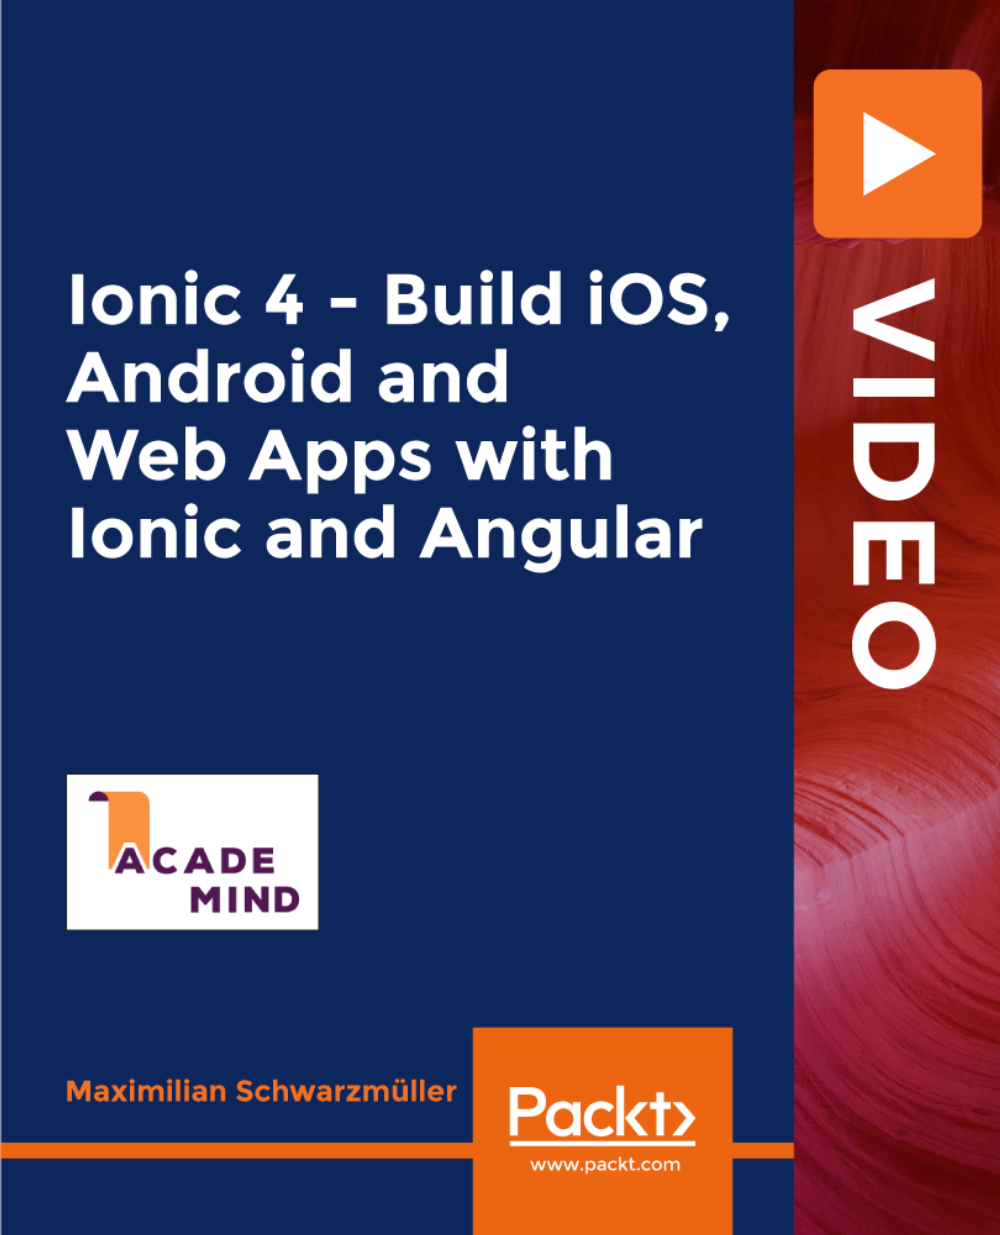 آموزش Ionic 4 - ساخت iOS، Android و برنامه های وب با Ionic و Angular [ویدئو]